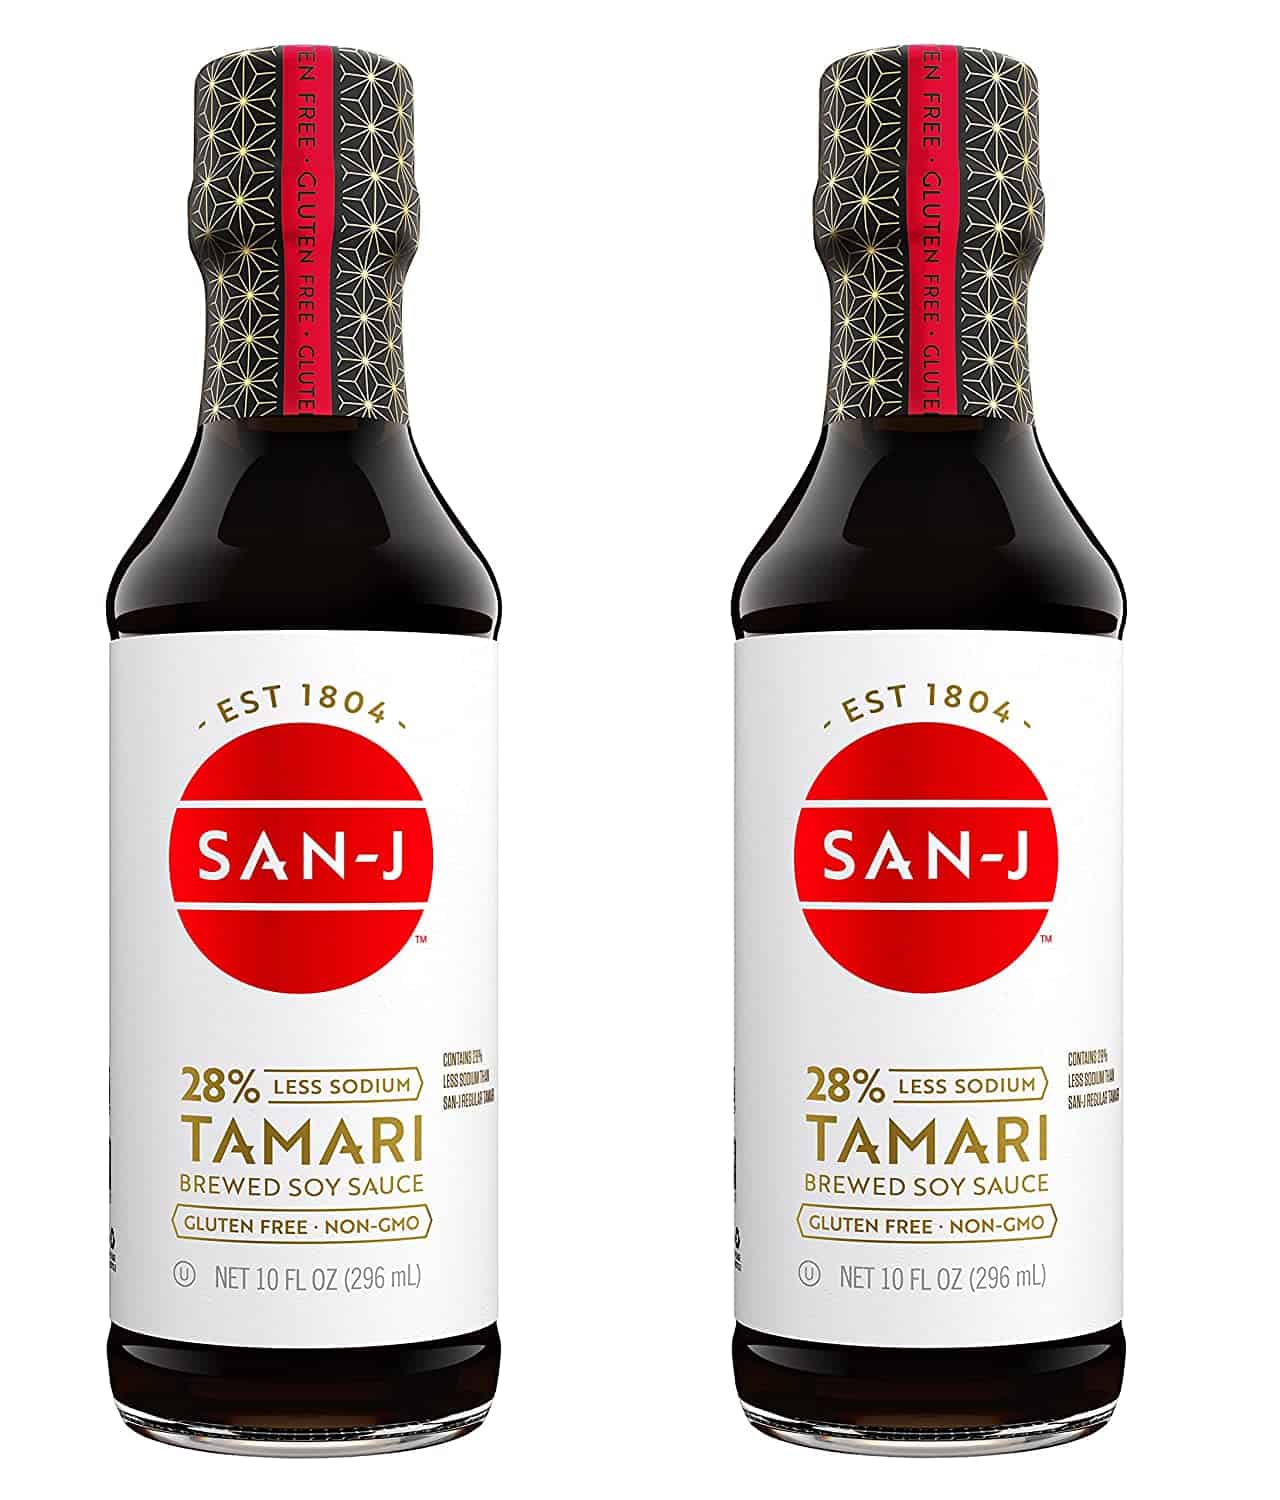 ซอสทามาริที่ดีที่สุด: San-J Gluten Free Tamari